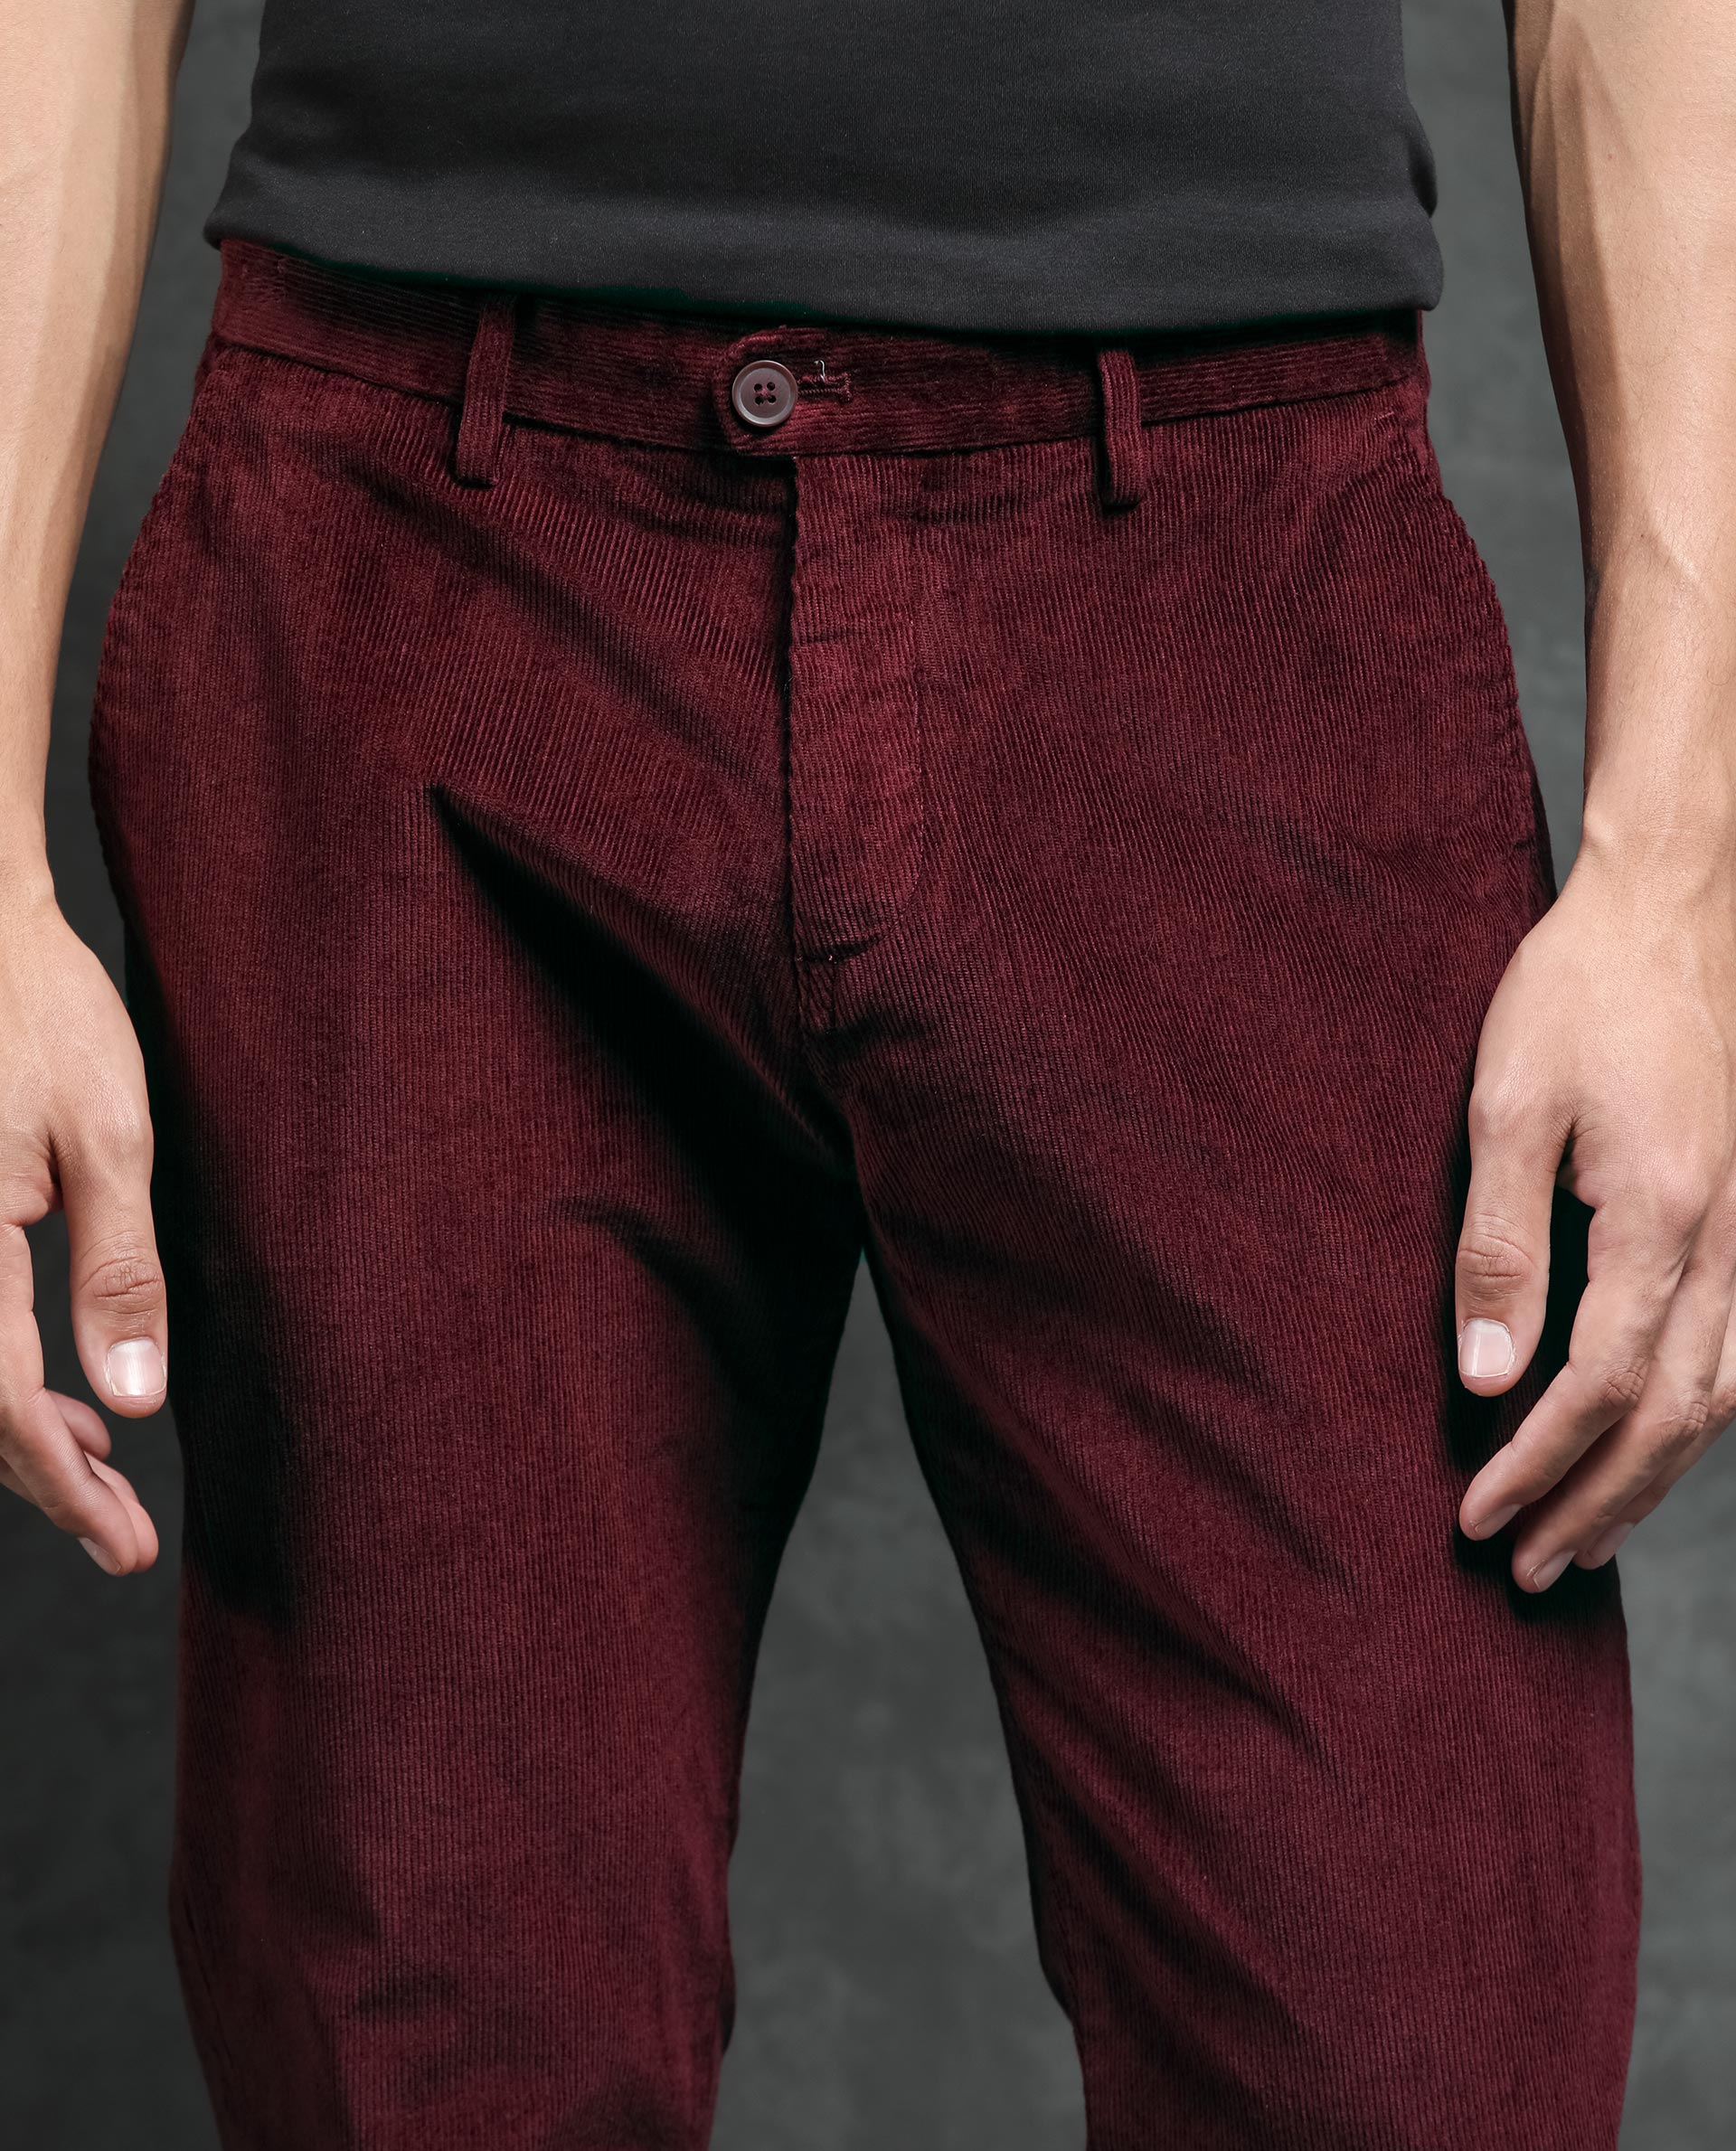 Corduroy Trousers - Thomas Scott | Premium Mens Apparel Online in India